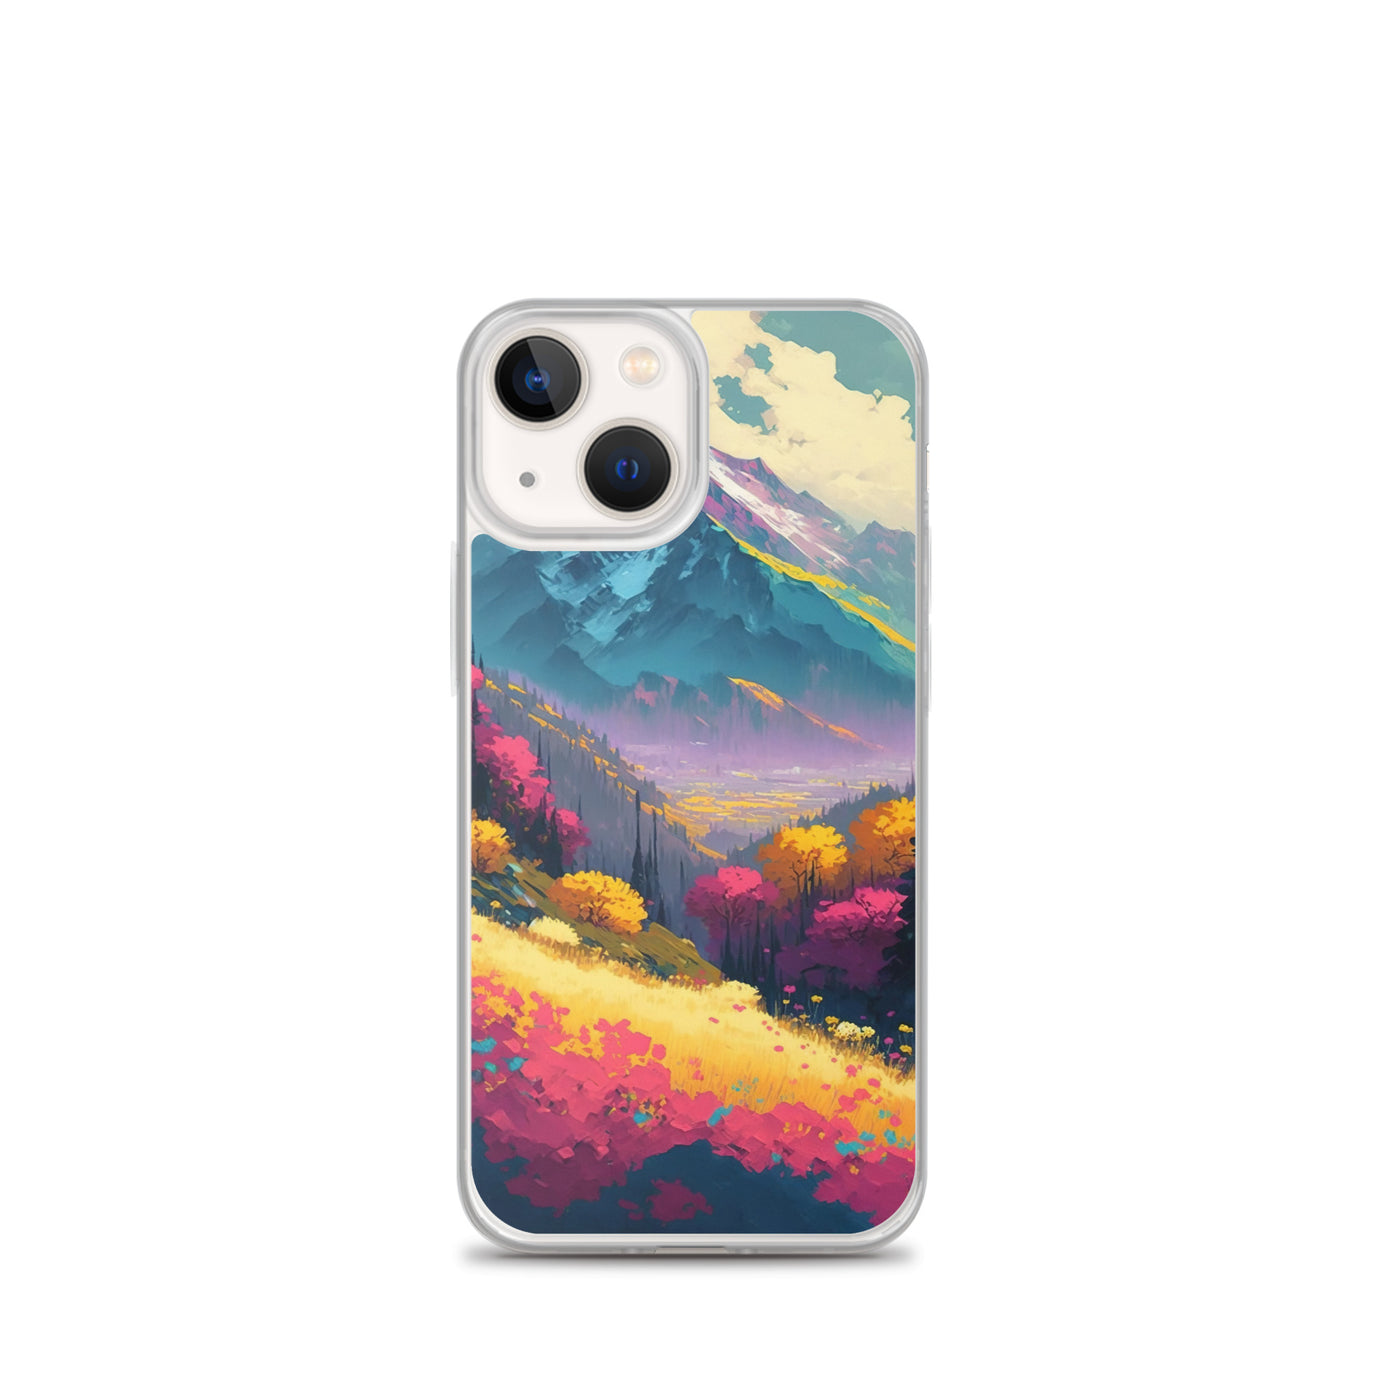 Berge, pinke und gelbe Bäume, sowie Blumen - Farbige Malerei - iPhone Schutzhülle (durchsichtig) berge xxx iPhone 13 mini